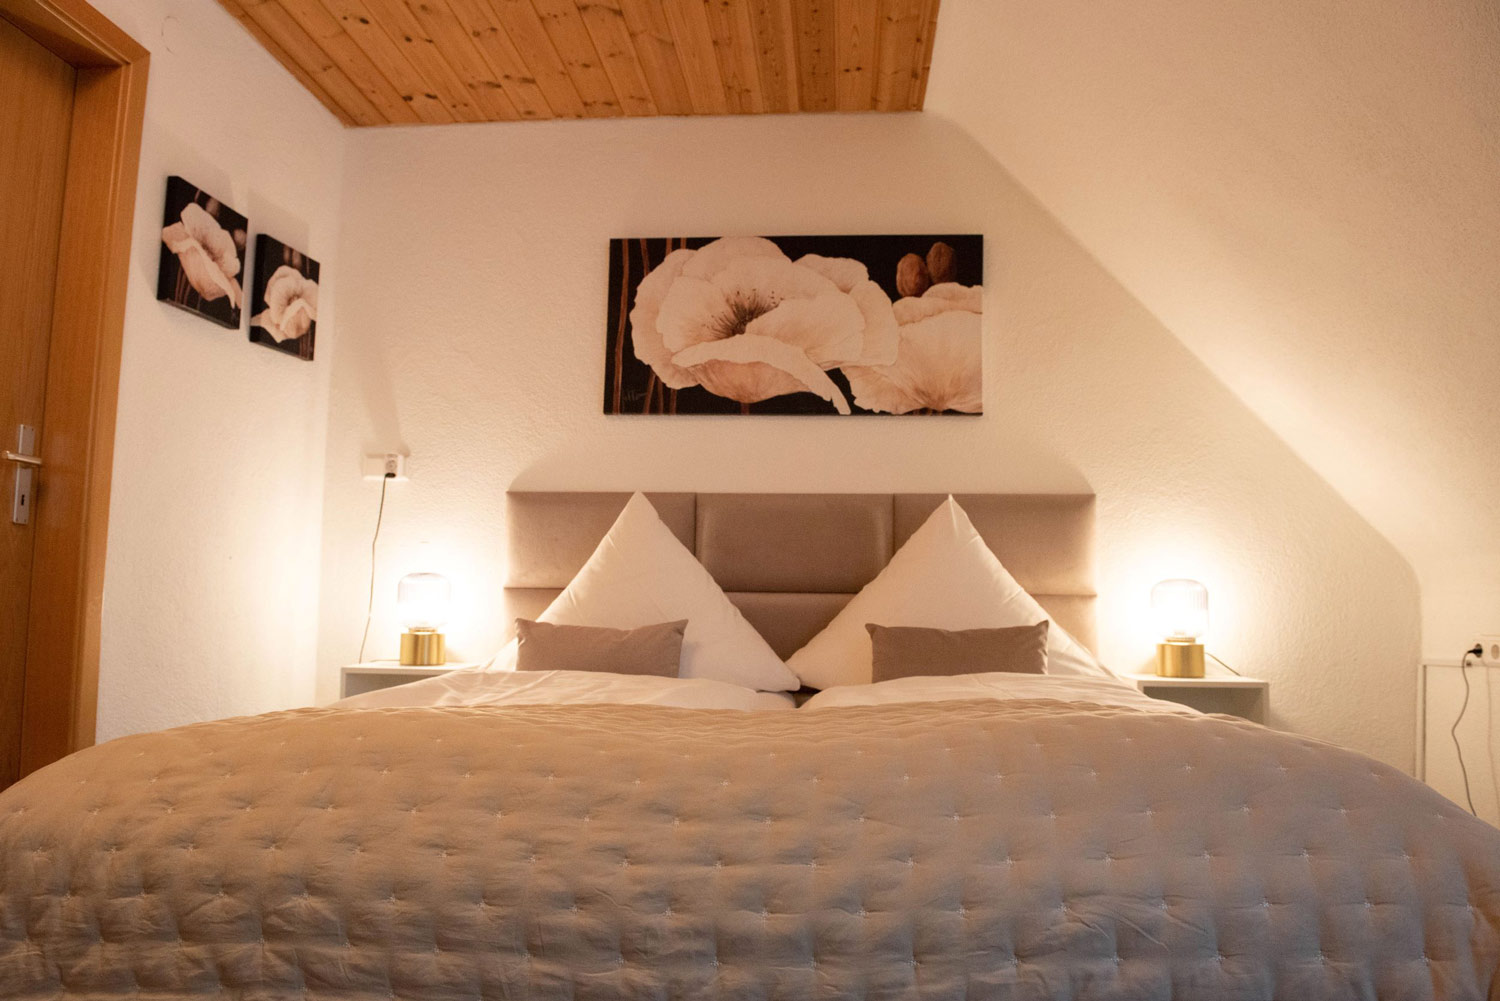 Das schöne kleine Hotel im Allgaeu verzaubert seine Gäste mit einem extravaganten Design und Farben in Lila und Bordeaux.